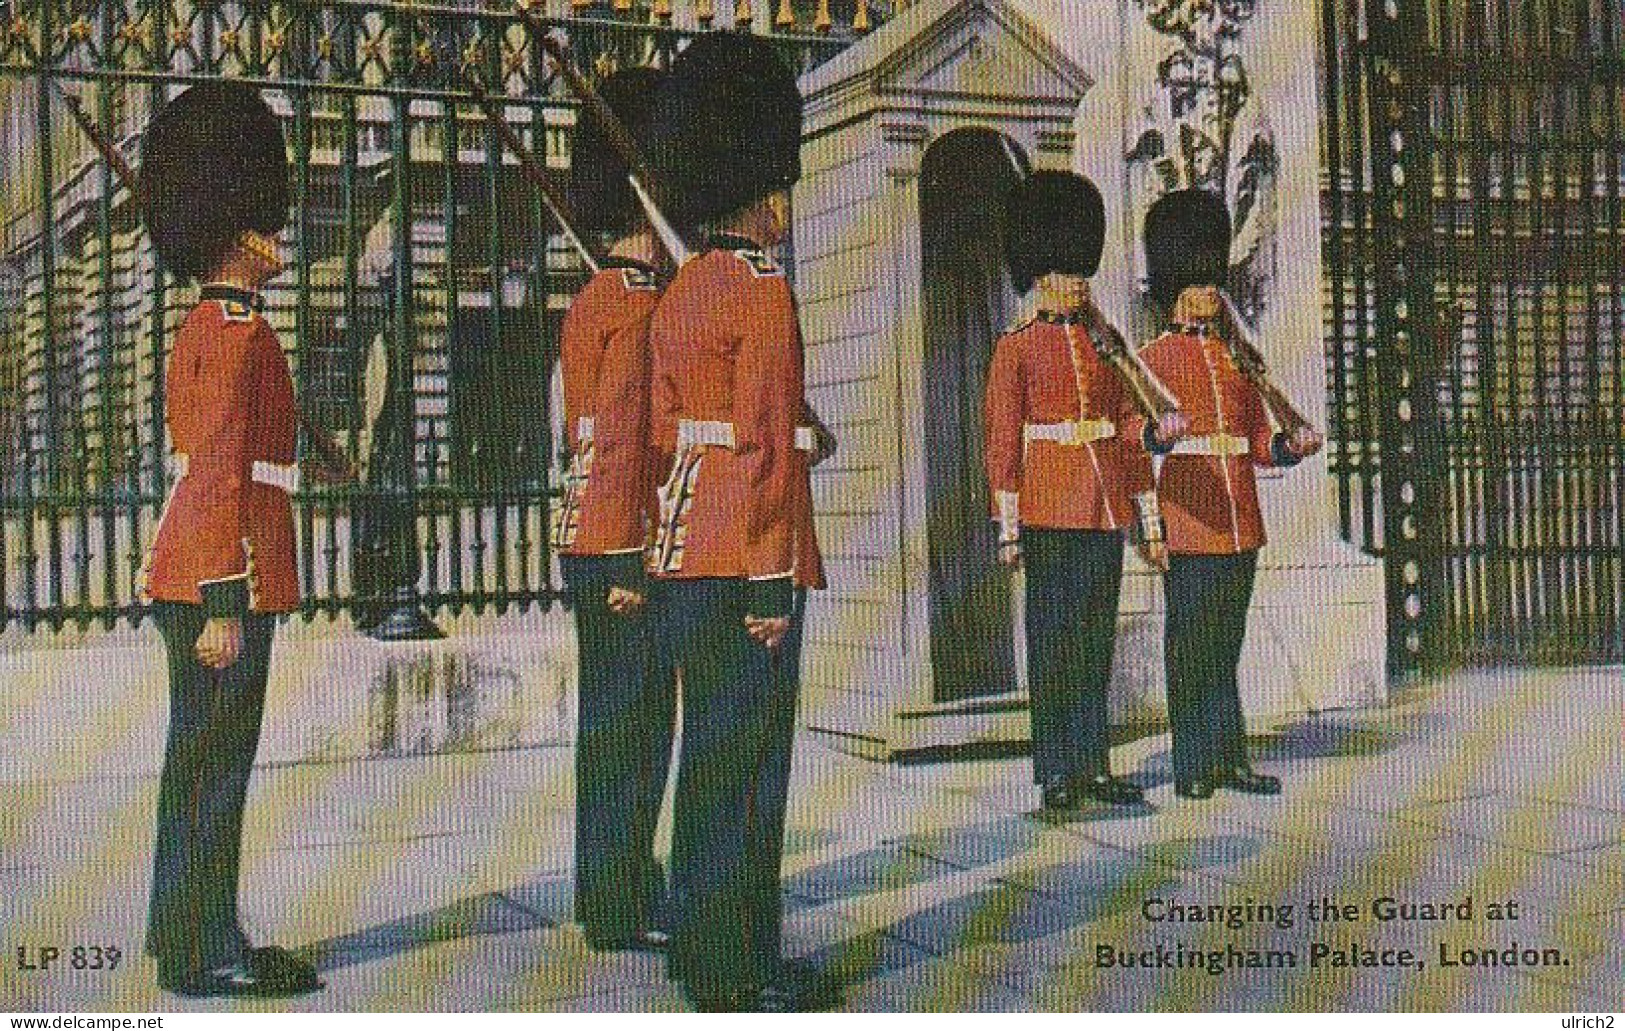 AK London - Changing The Guards At Buckingham Palace  (68528) - Buckingham Palace